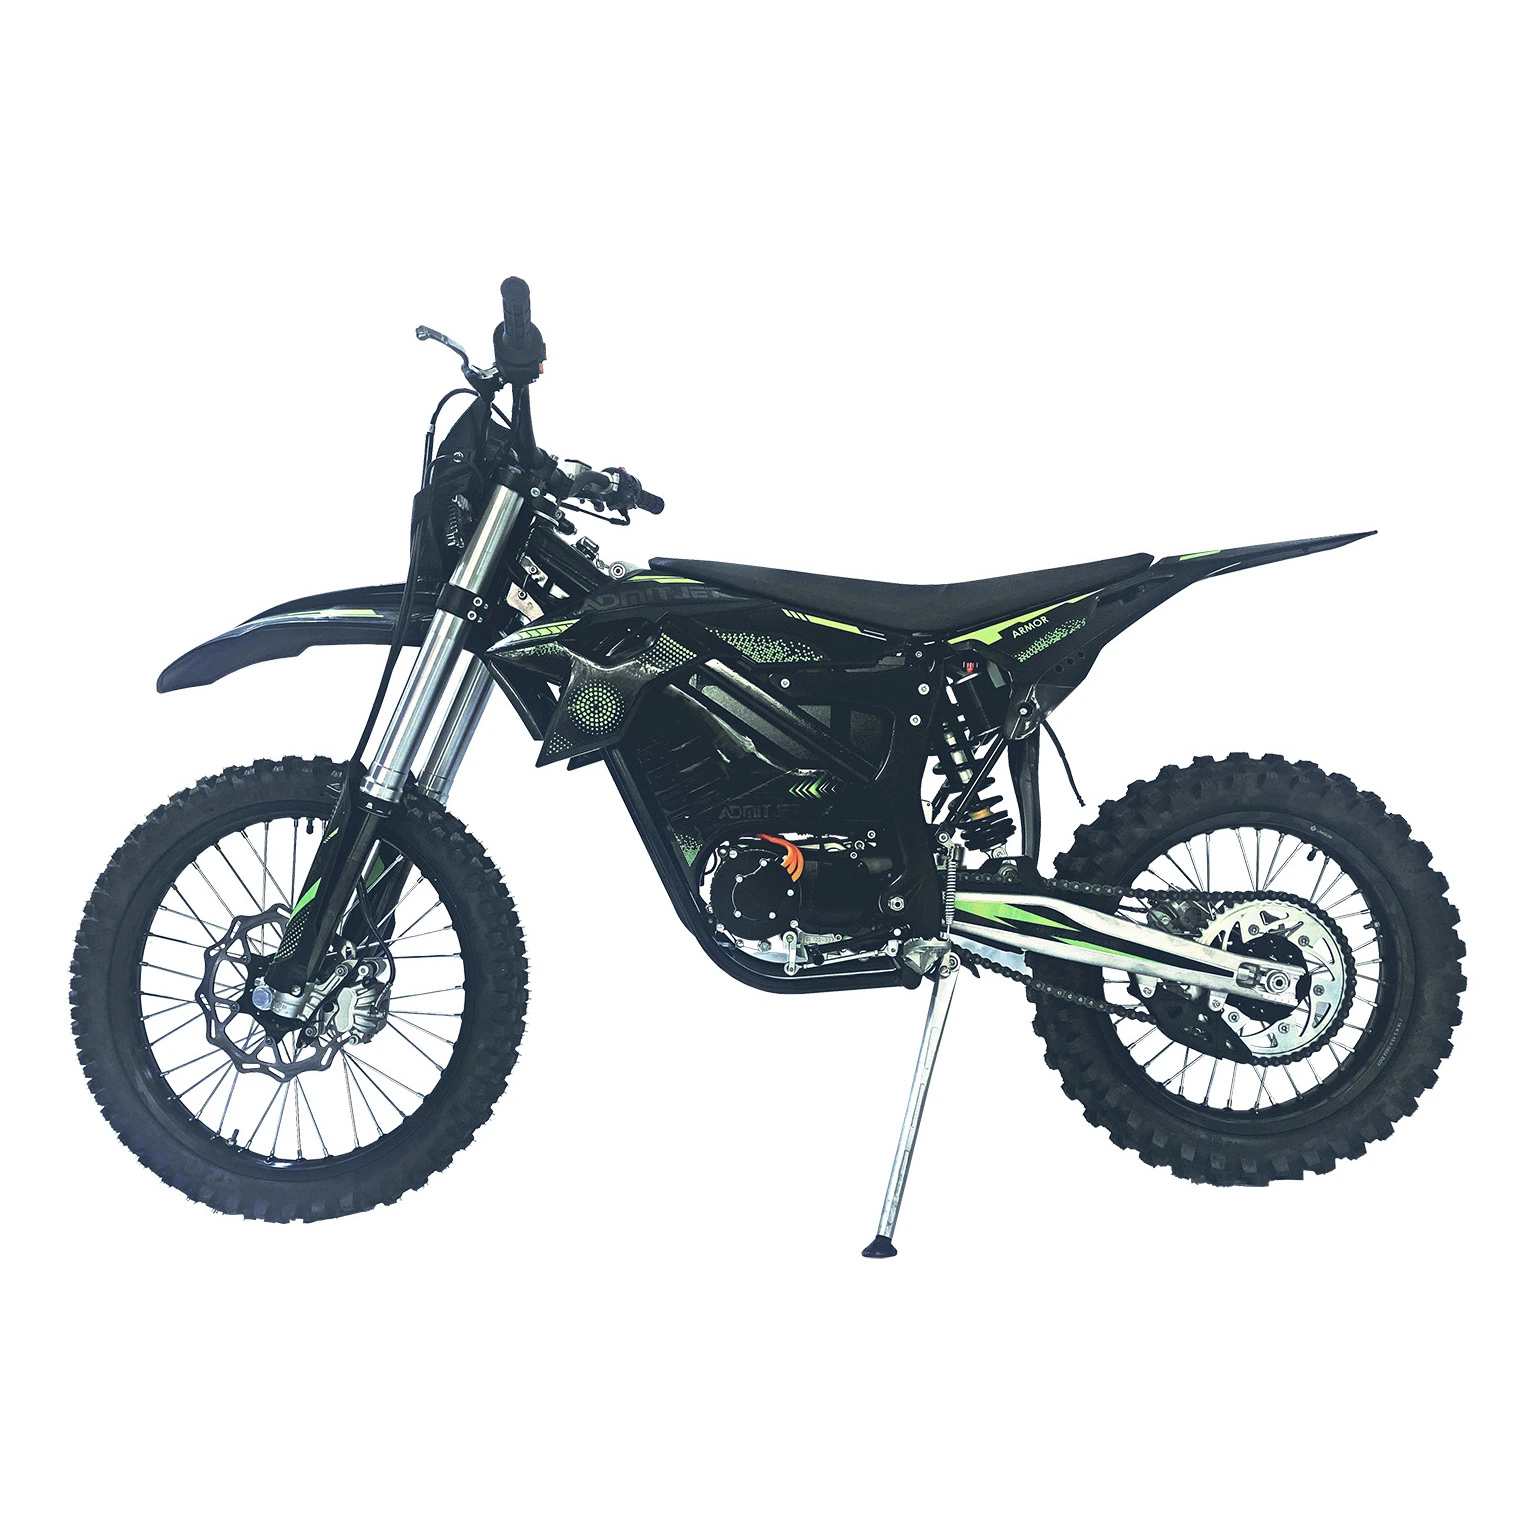 Moto eléctrica de 12kw  Motocicleta e bicicleta motocross pitbike bicicleta de tierra eléctrica para adultos